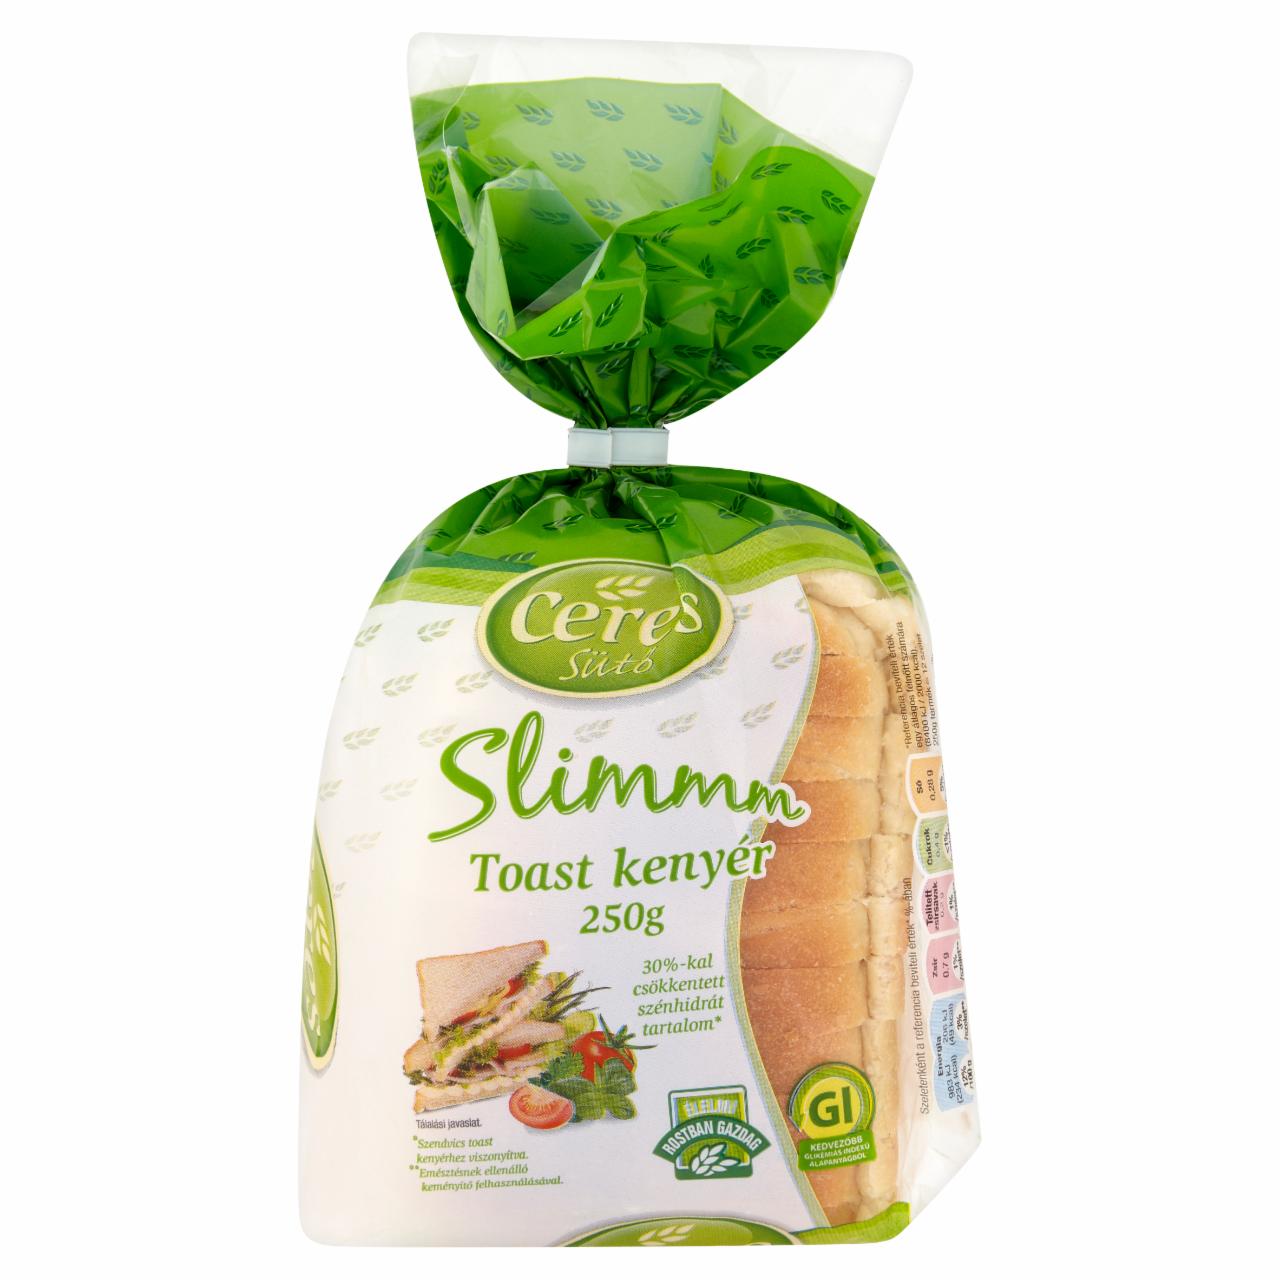 Képek - Slimmm szénhidrátcsökkentett toast kenyér Ceres Sütő